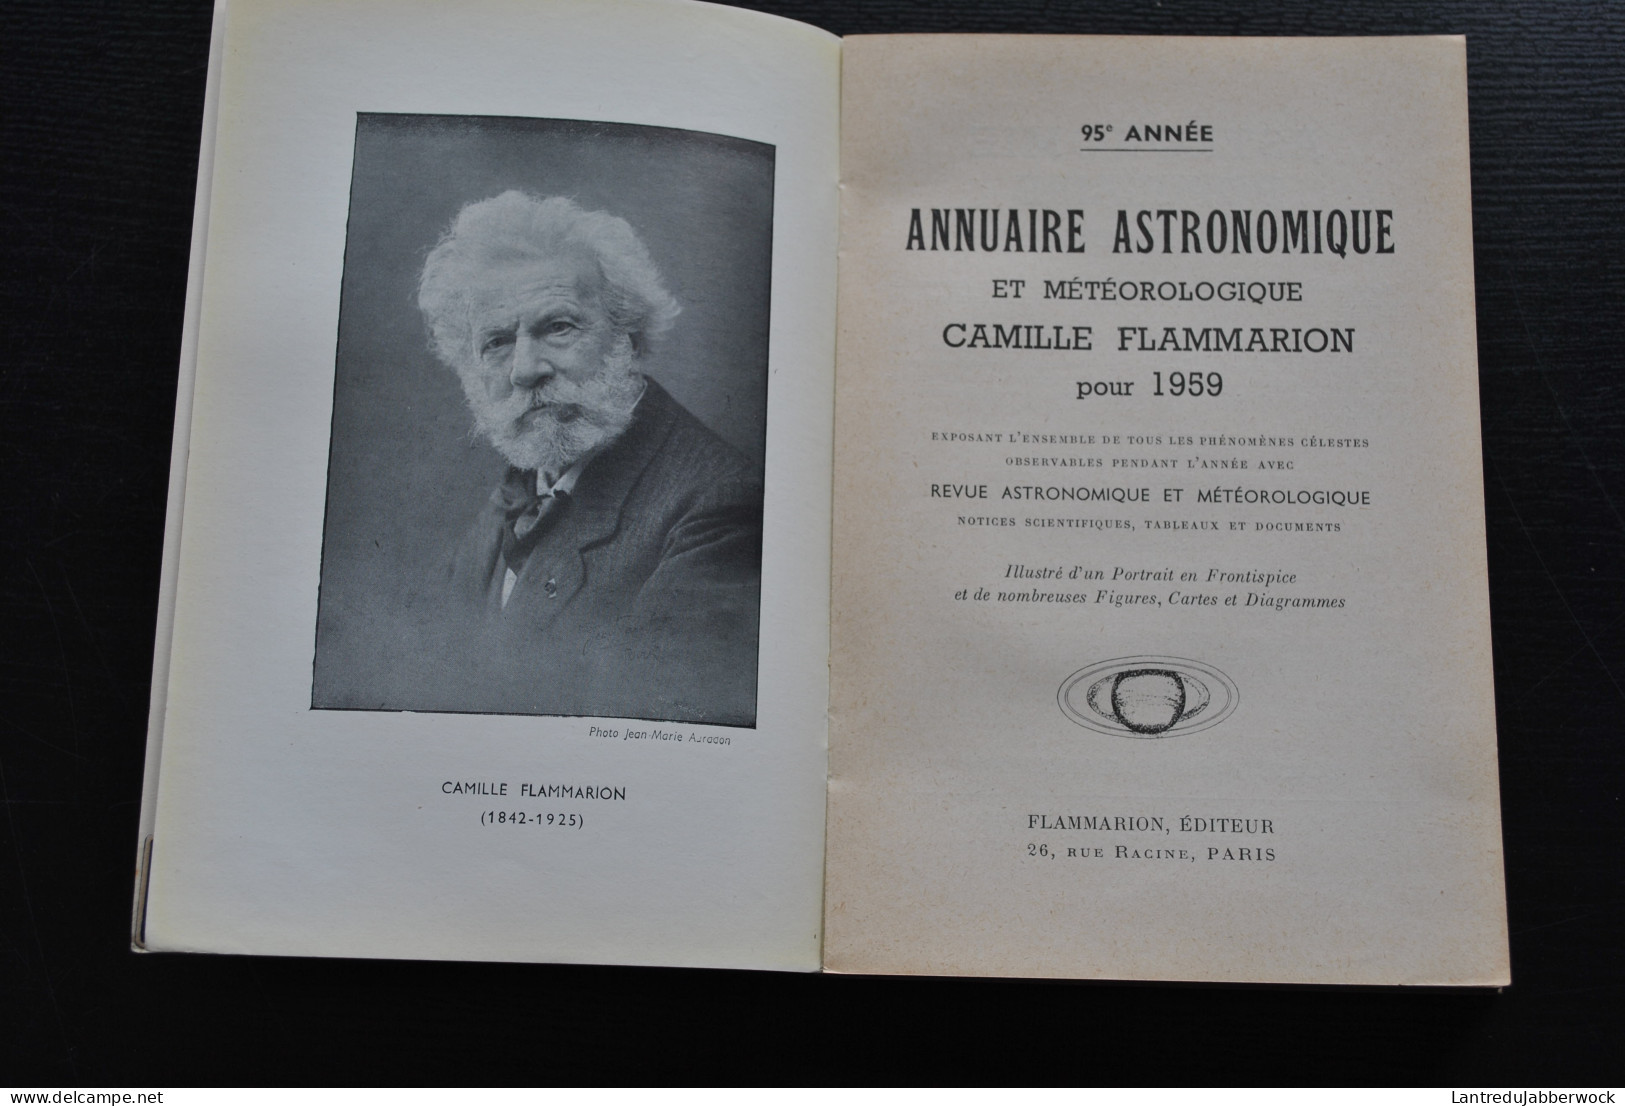 Annuaire Astronomique Et Météorologique Camille FLAMMARION 1959 Observatoire De Juvisy Astronomie Téléscope Calendrier - Astronomia